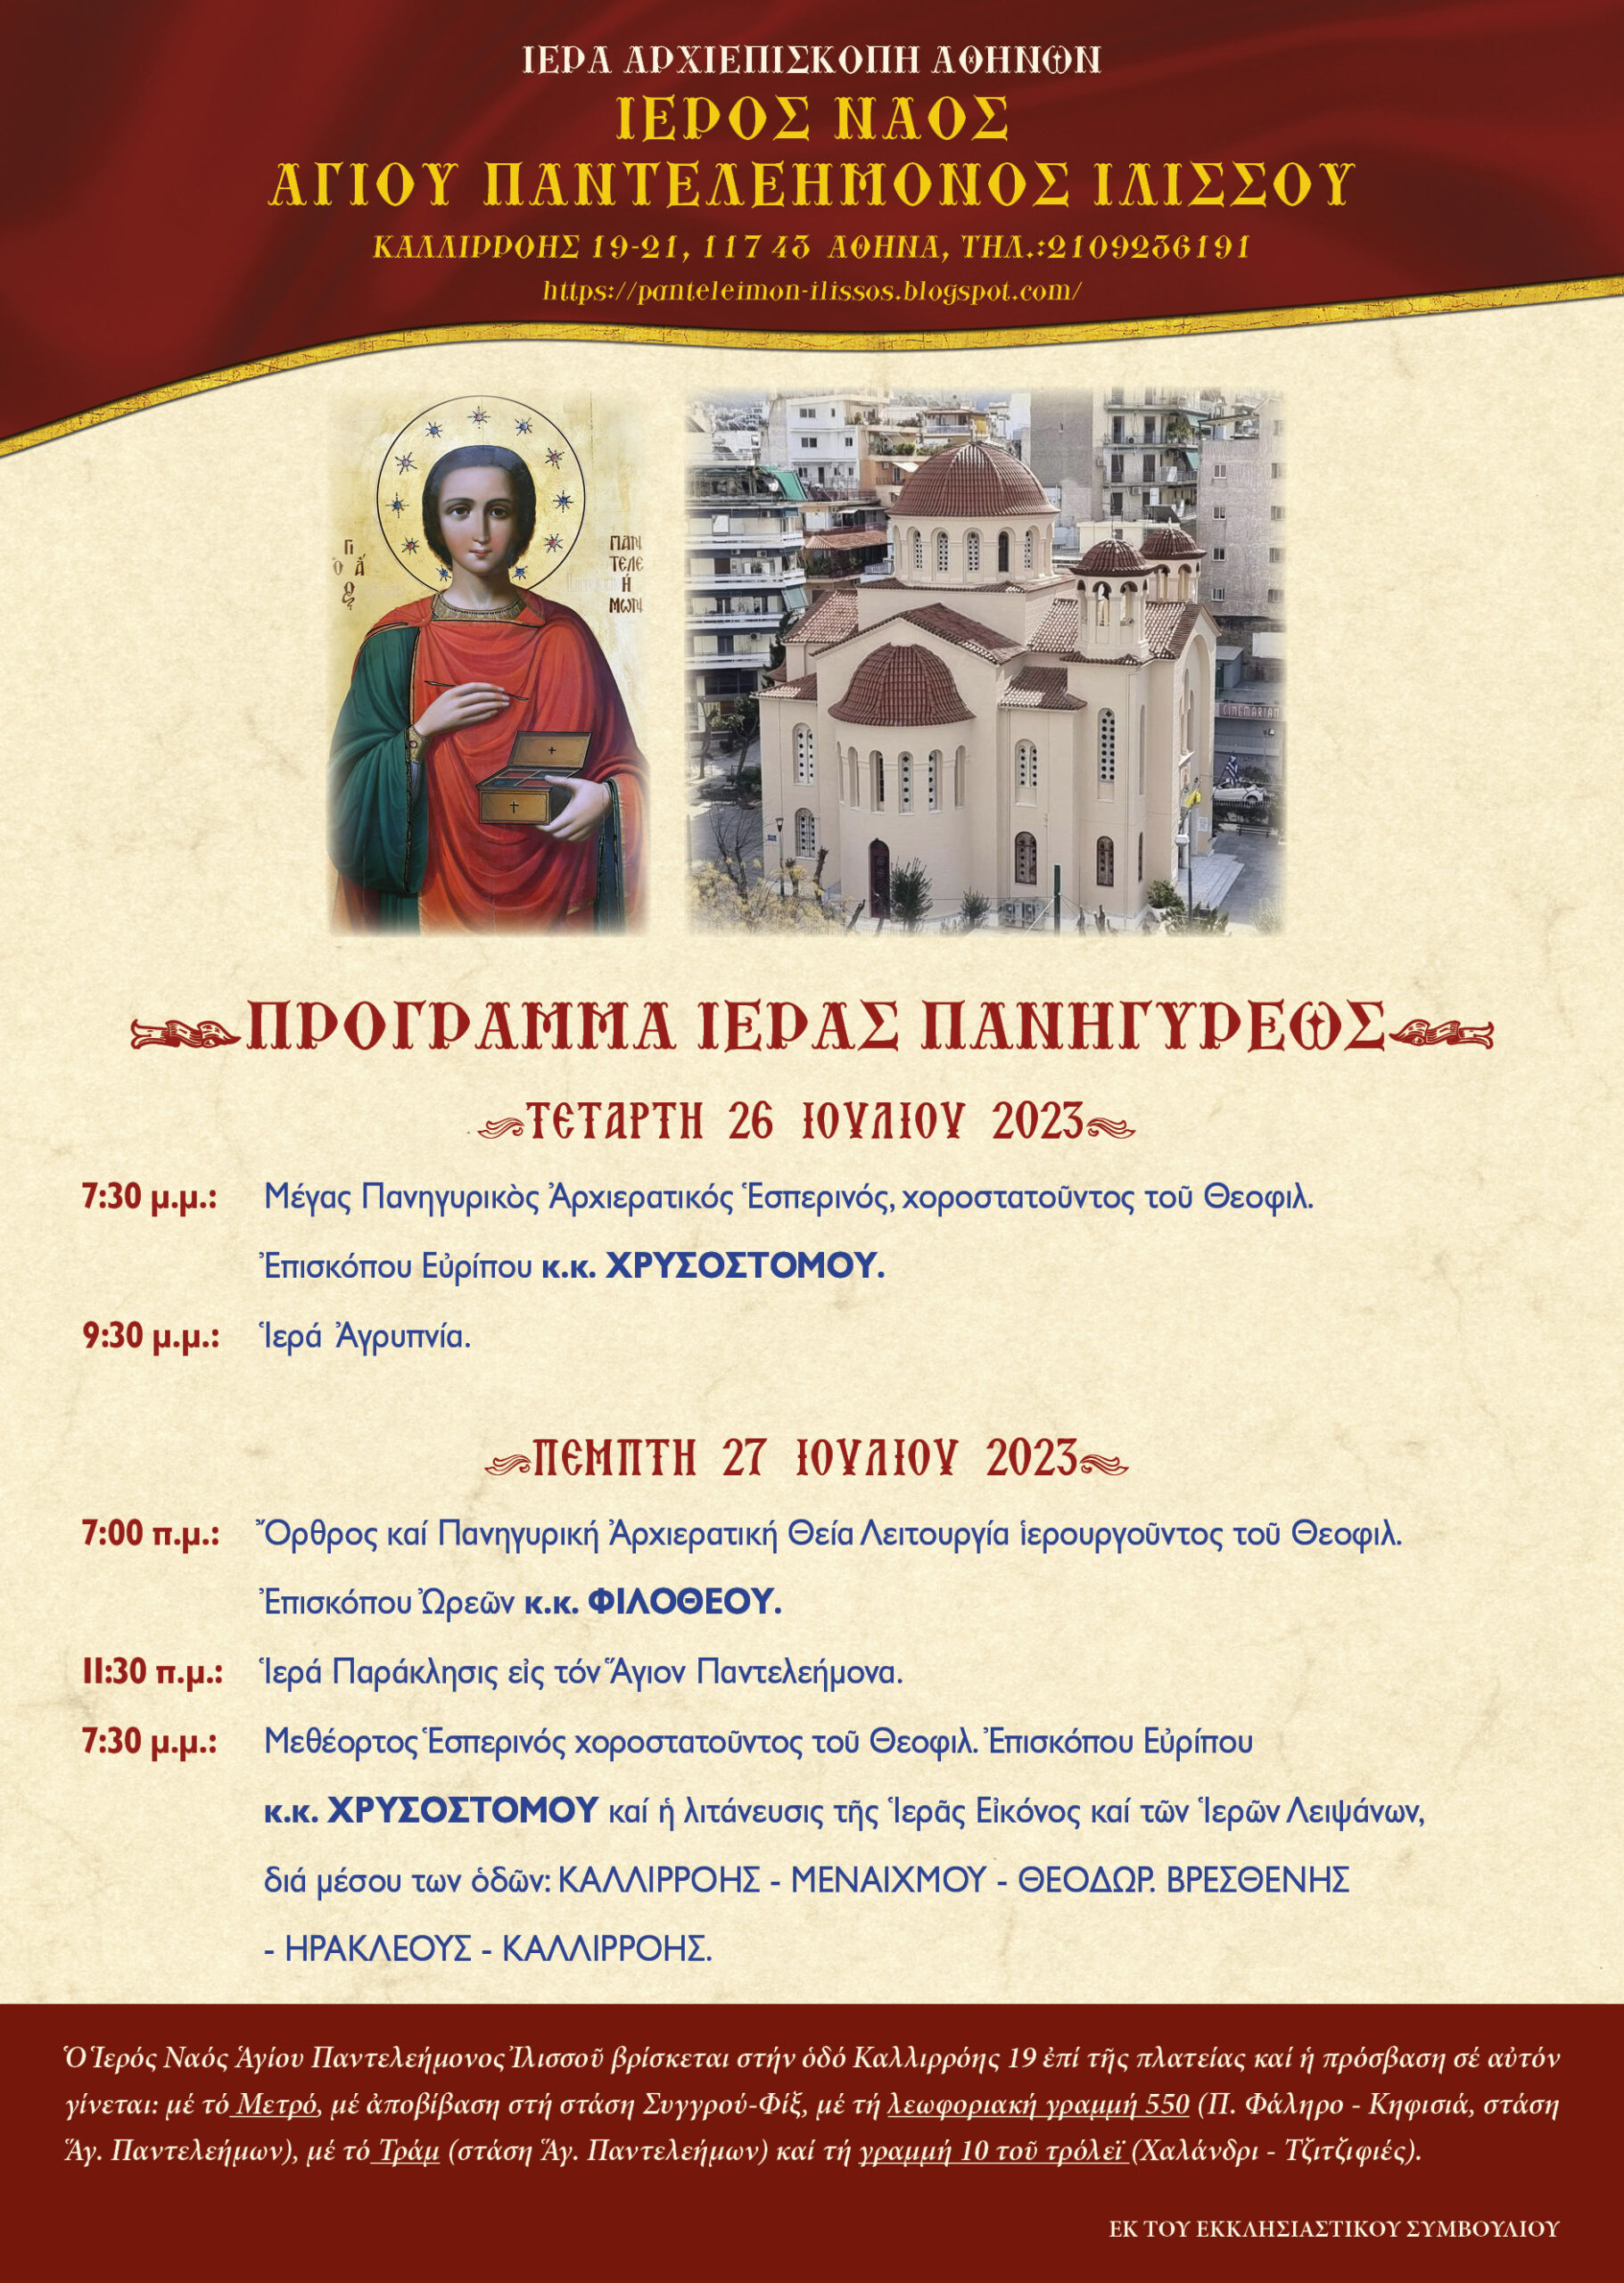 Τον Άγιο Παντελεήμονα θα εορτάσει ο ομώνυμος Ιερός Ναός της οδού Καλλιρρόης στην Αθήνα